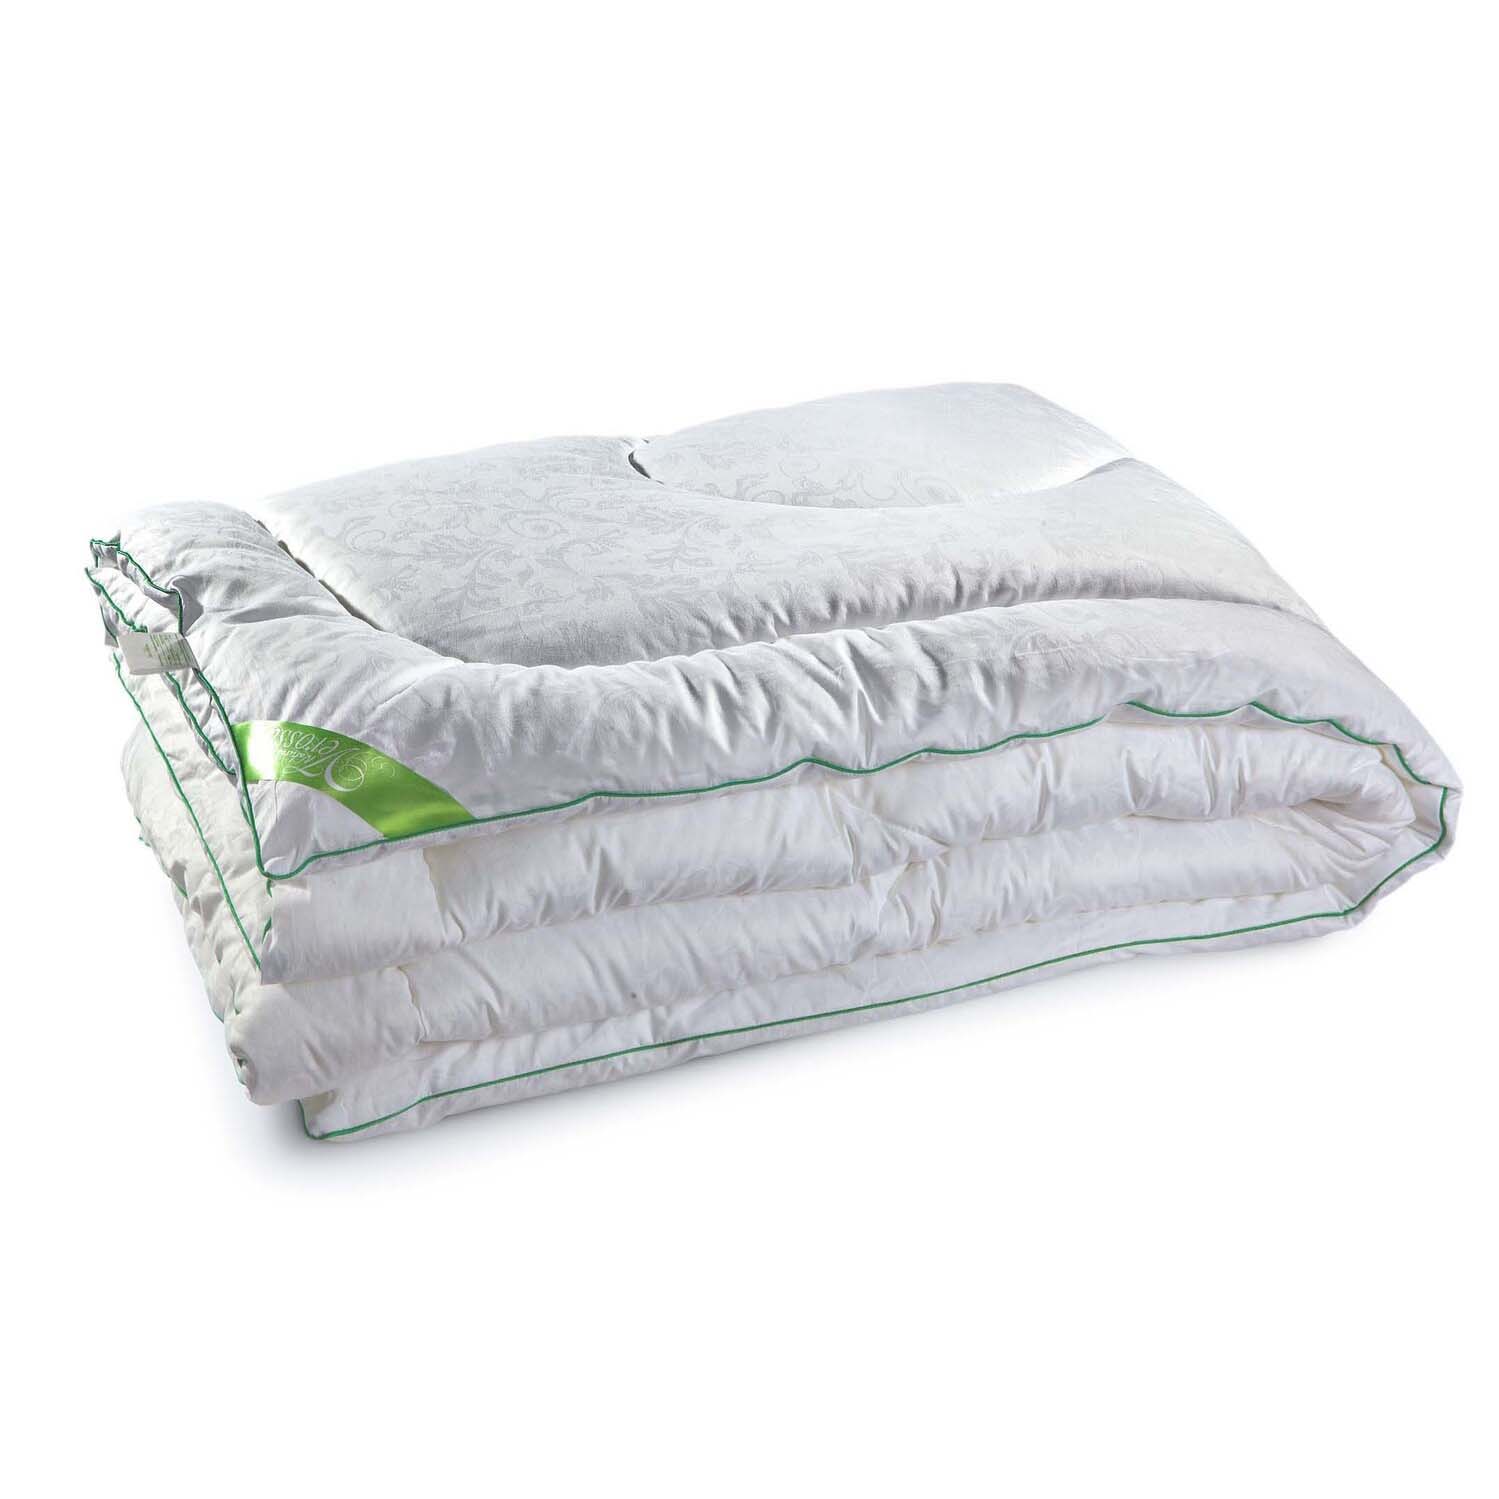 Одеяло Dolley Теплое Цвет: Белый (200х220 см), размер 200х220 см ero482028 Одеяло Dolley Теплое Цвет: Белый (200х220 см) - фото 1